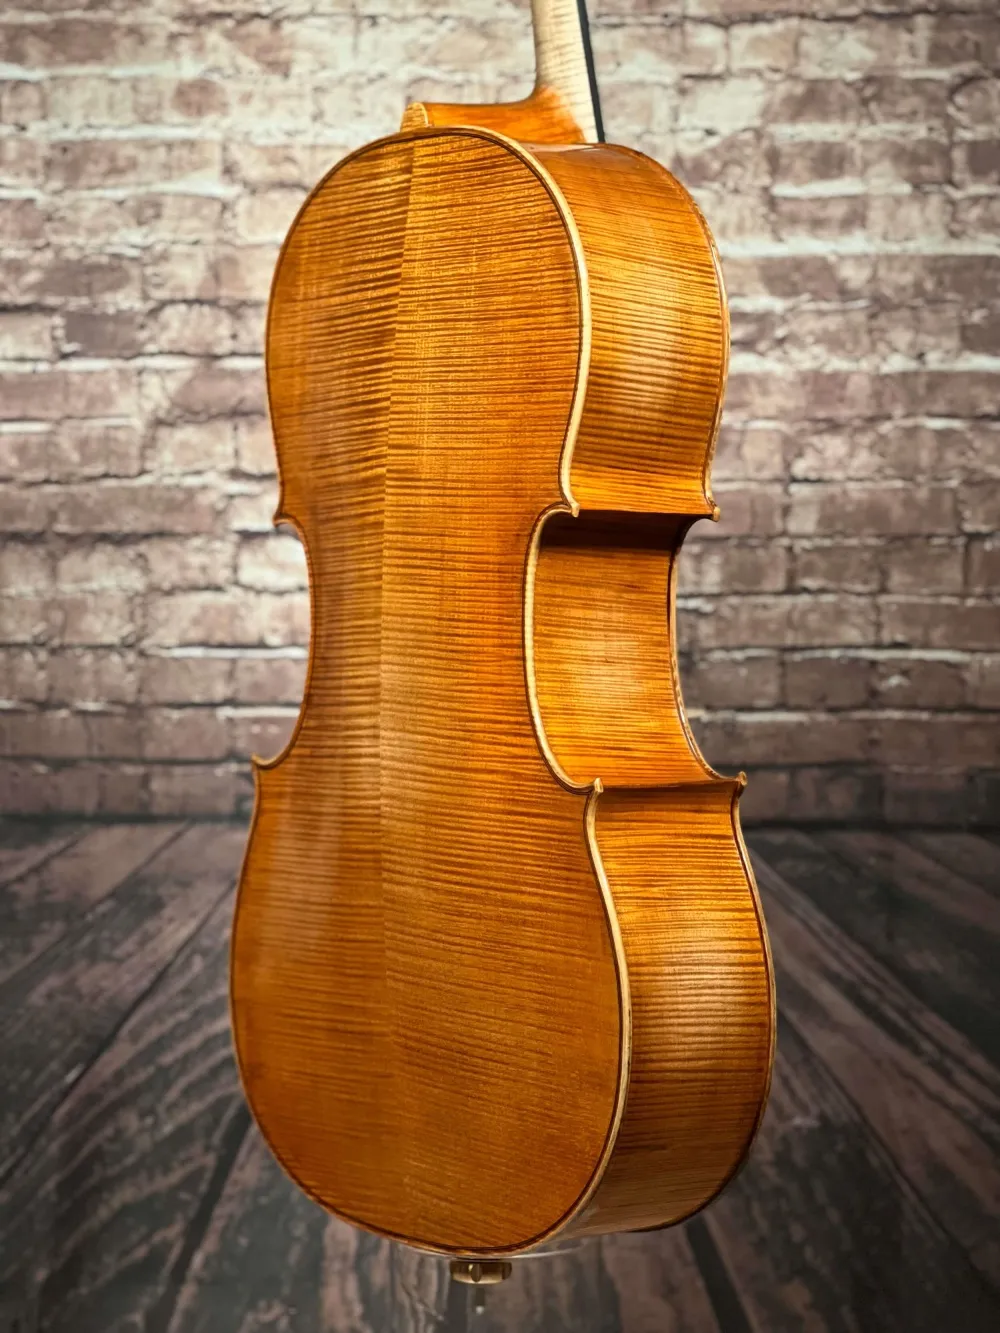 Boden-Zarge-Detailansicht eines Bivaj Árt Meister Cello (Violoncello) Modell STRADIVARI Handarbeit 2021